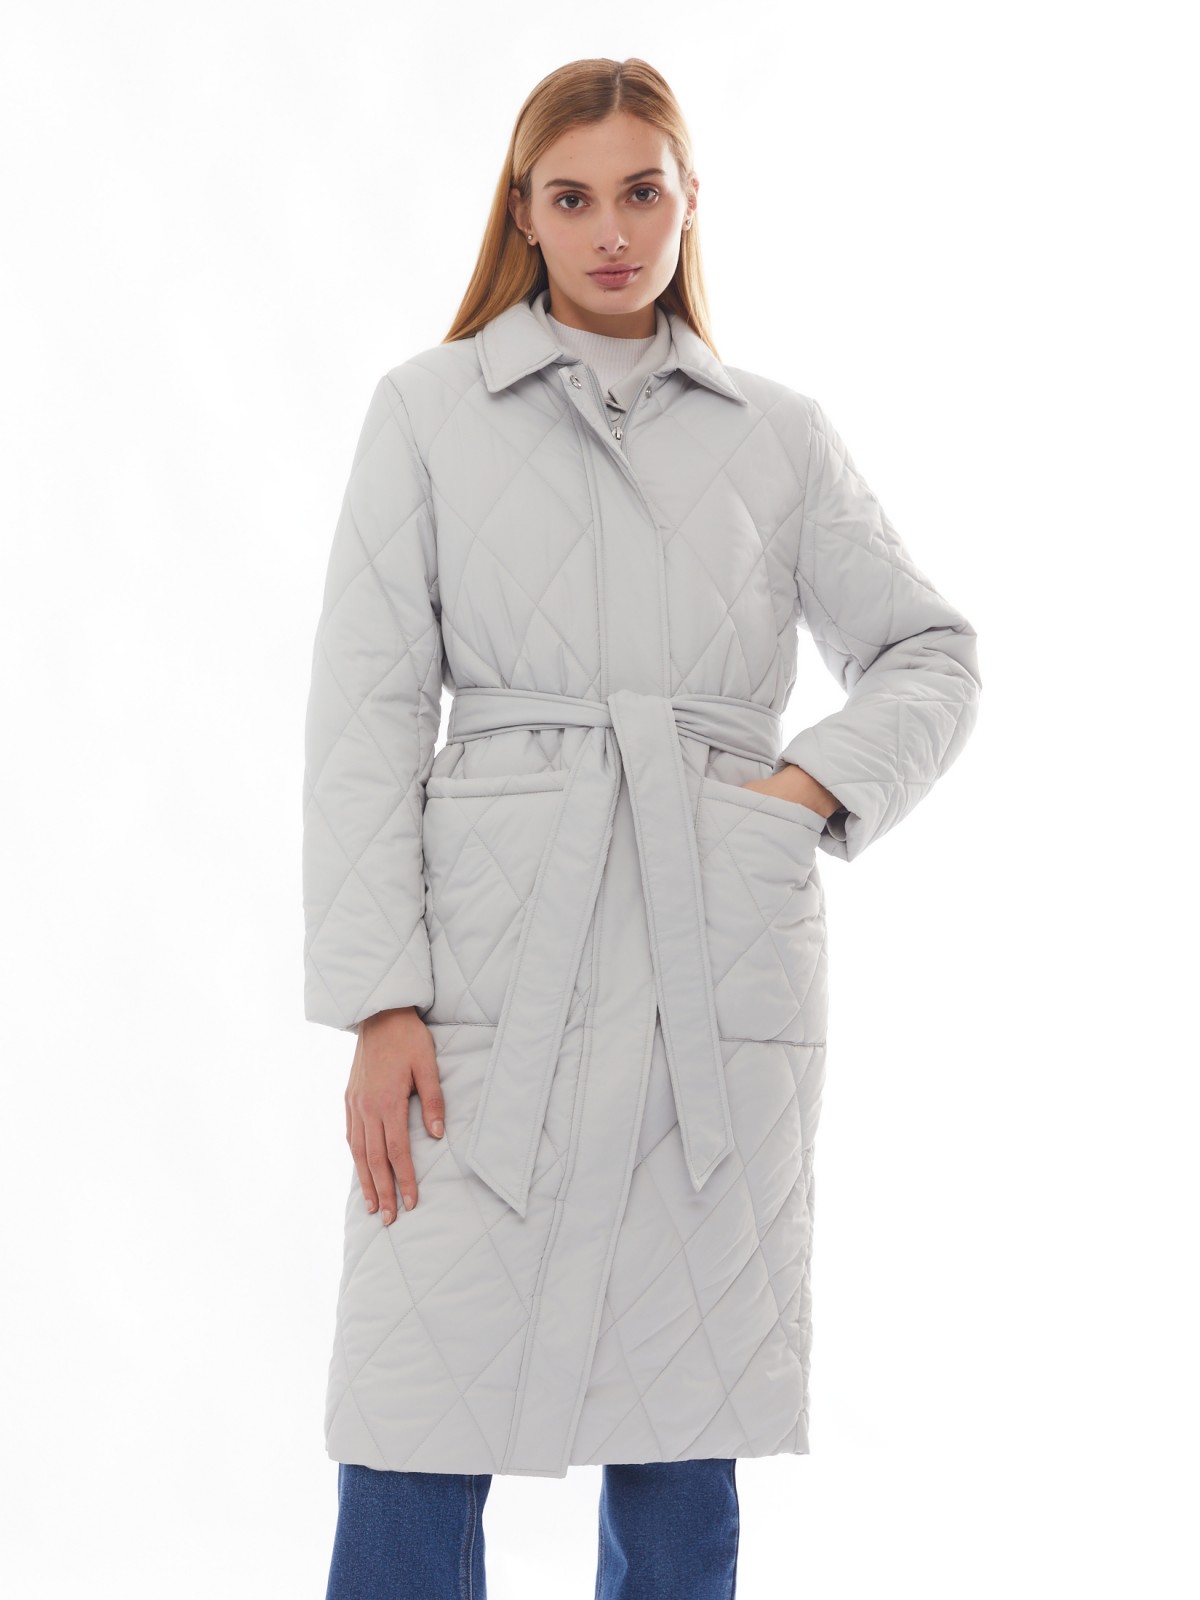 Утеплённое пальто с отложным воротником и поясом zolla 024125202094, цвет светло-серый, размер XS - фото 2